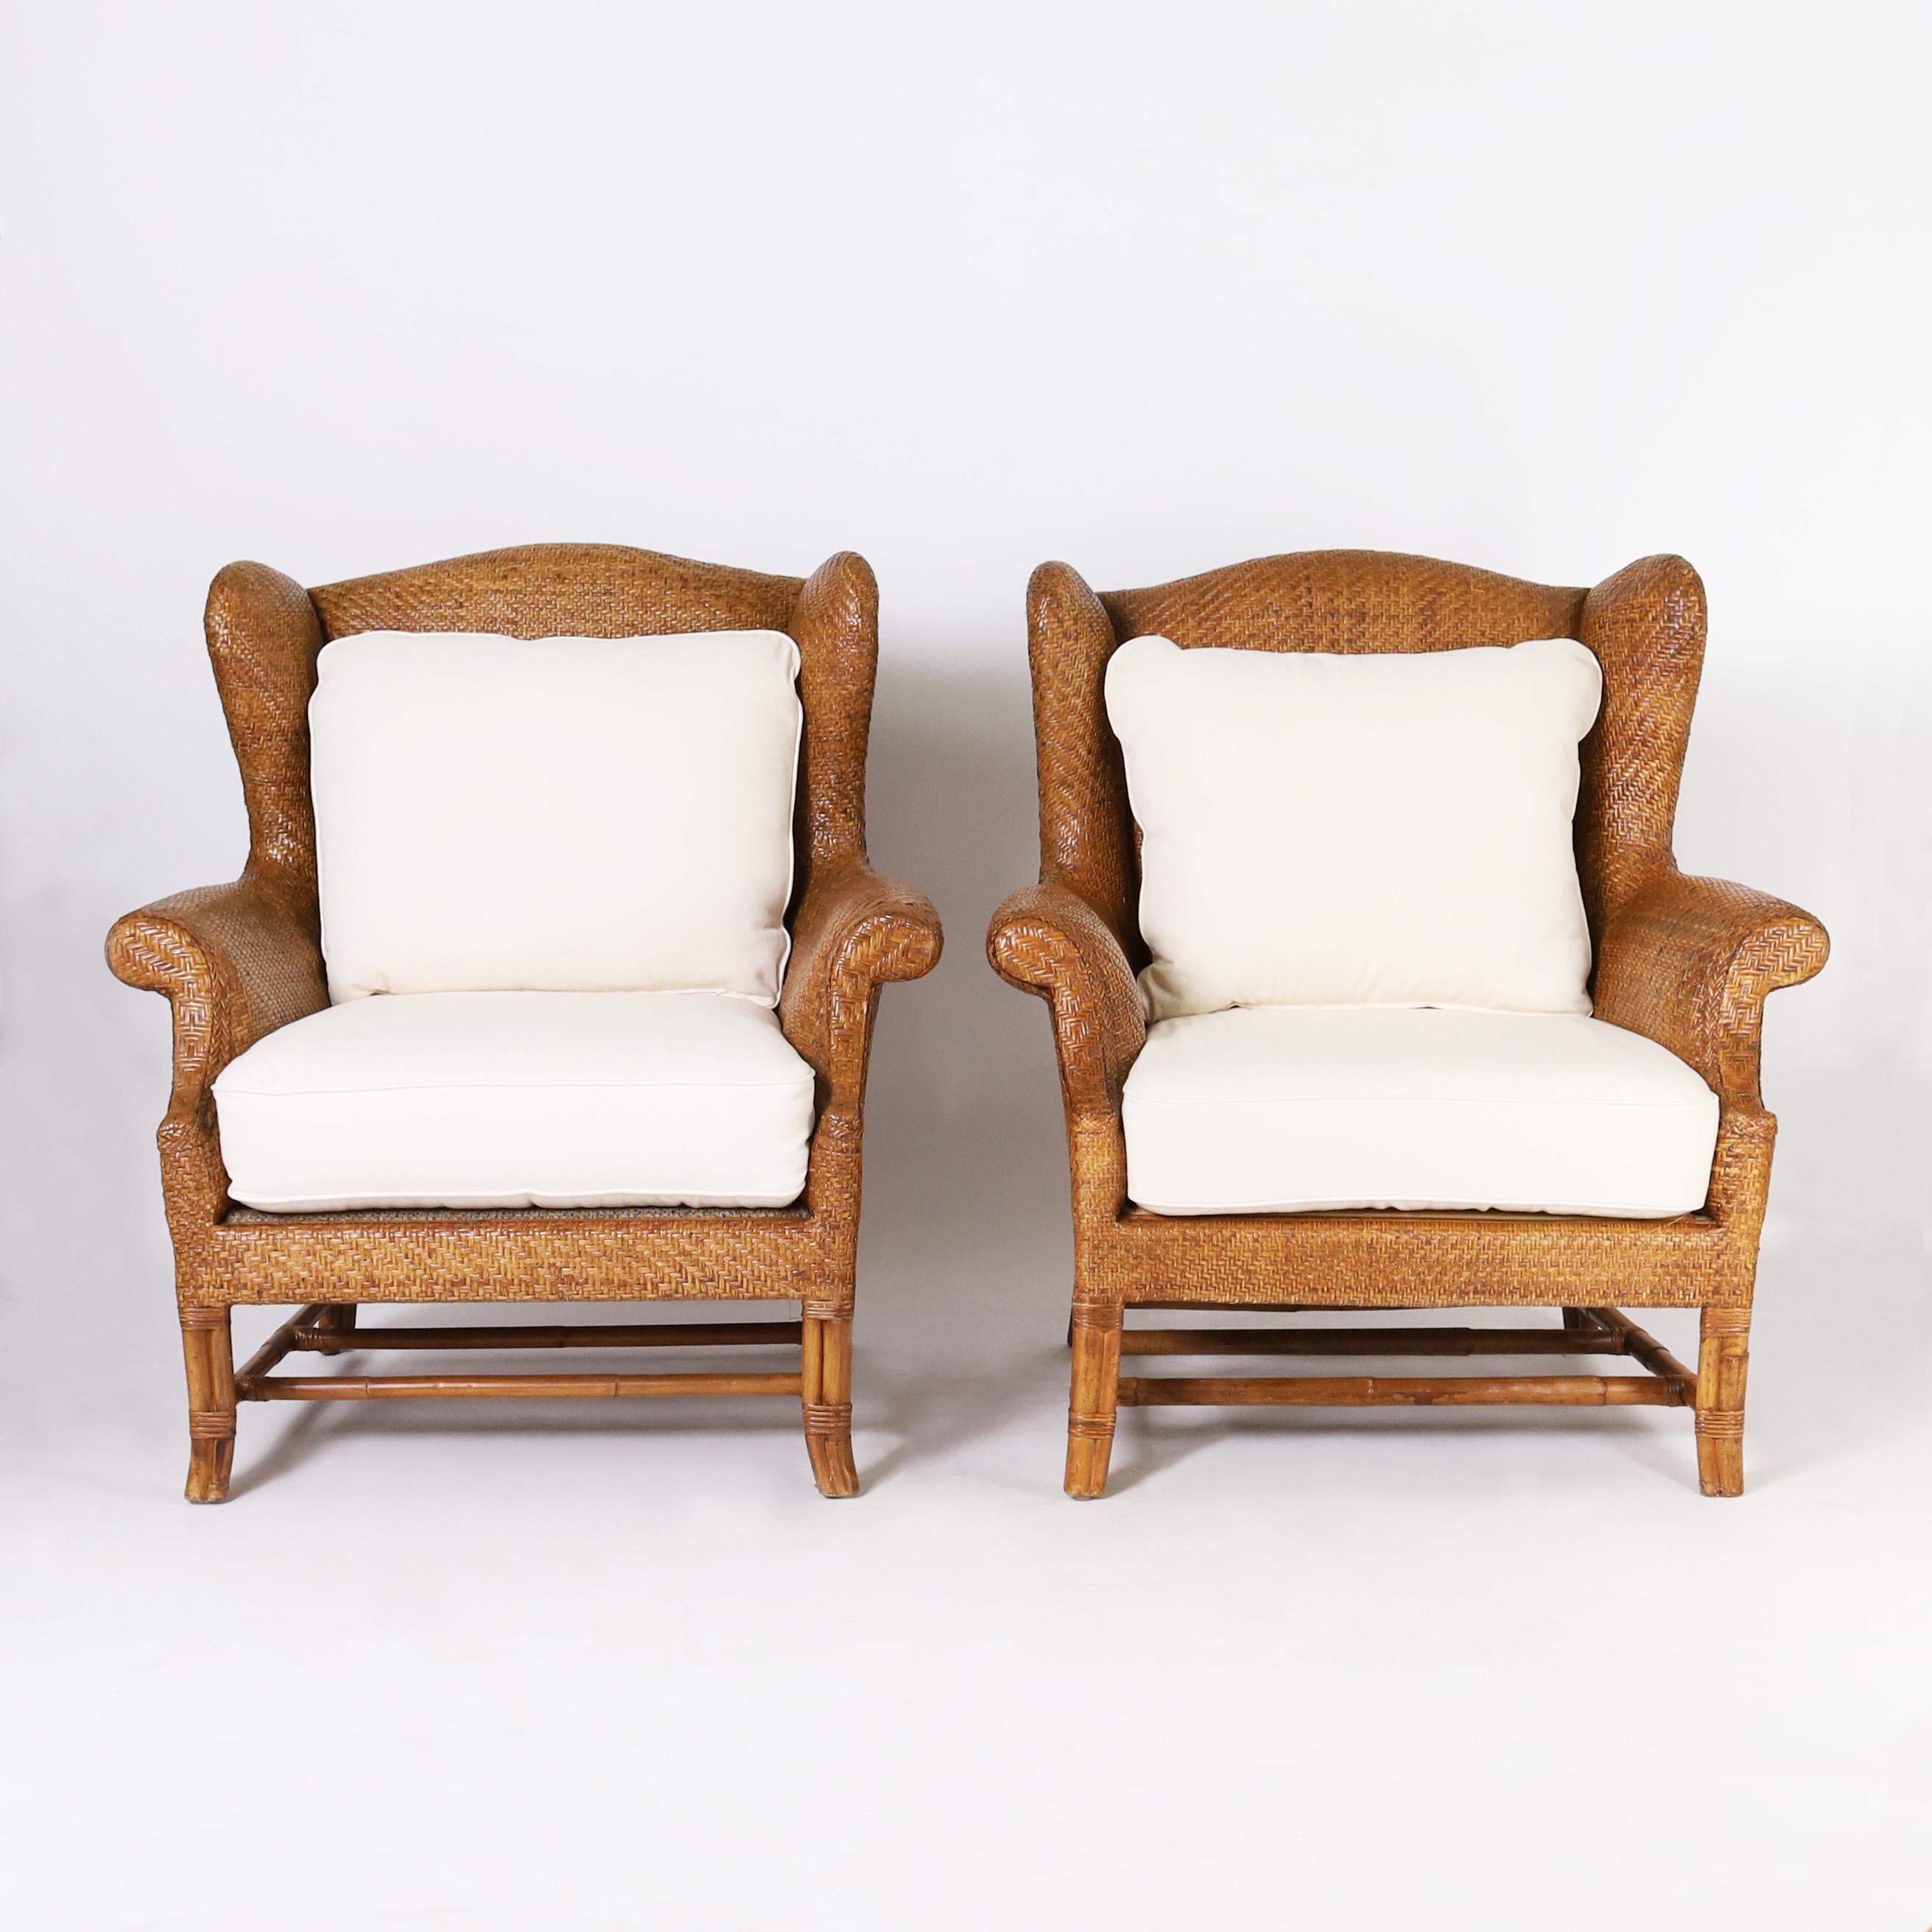 Colonial britannique Paire de fauteuils à dossier large de style British Colonial par Baker